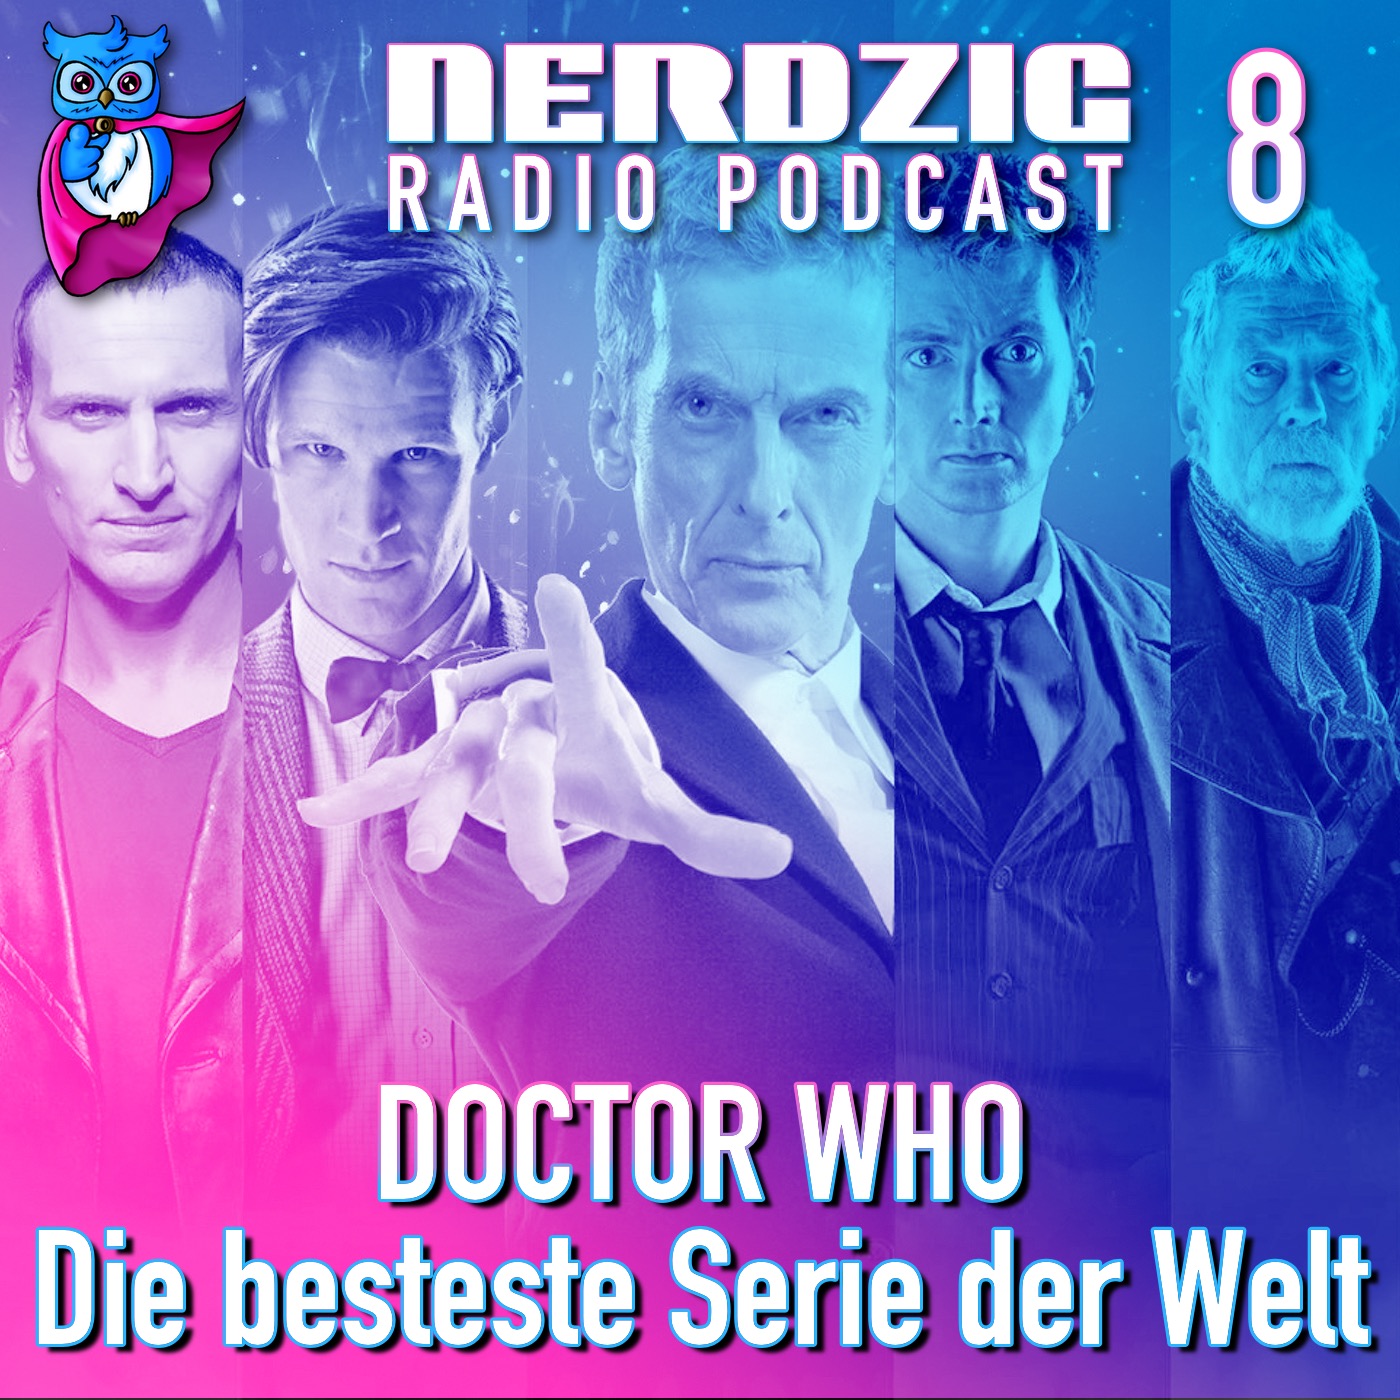 Nerdzig Radio #8 Doctor Who - die besteste Serie der Welt